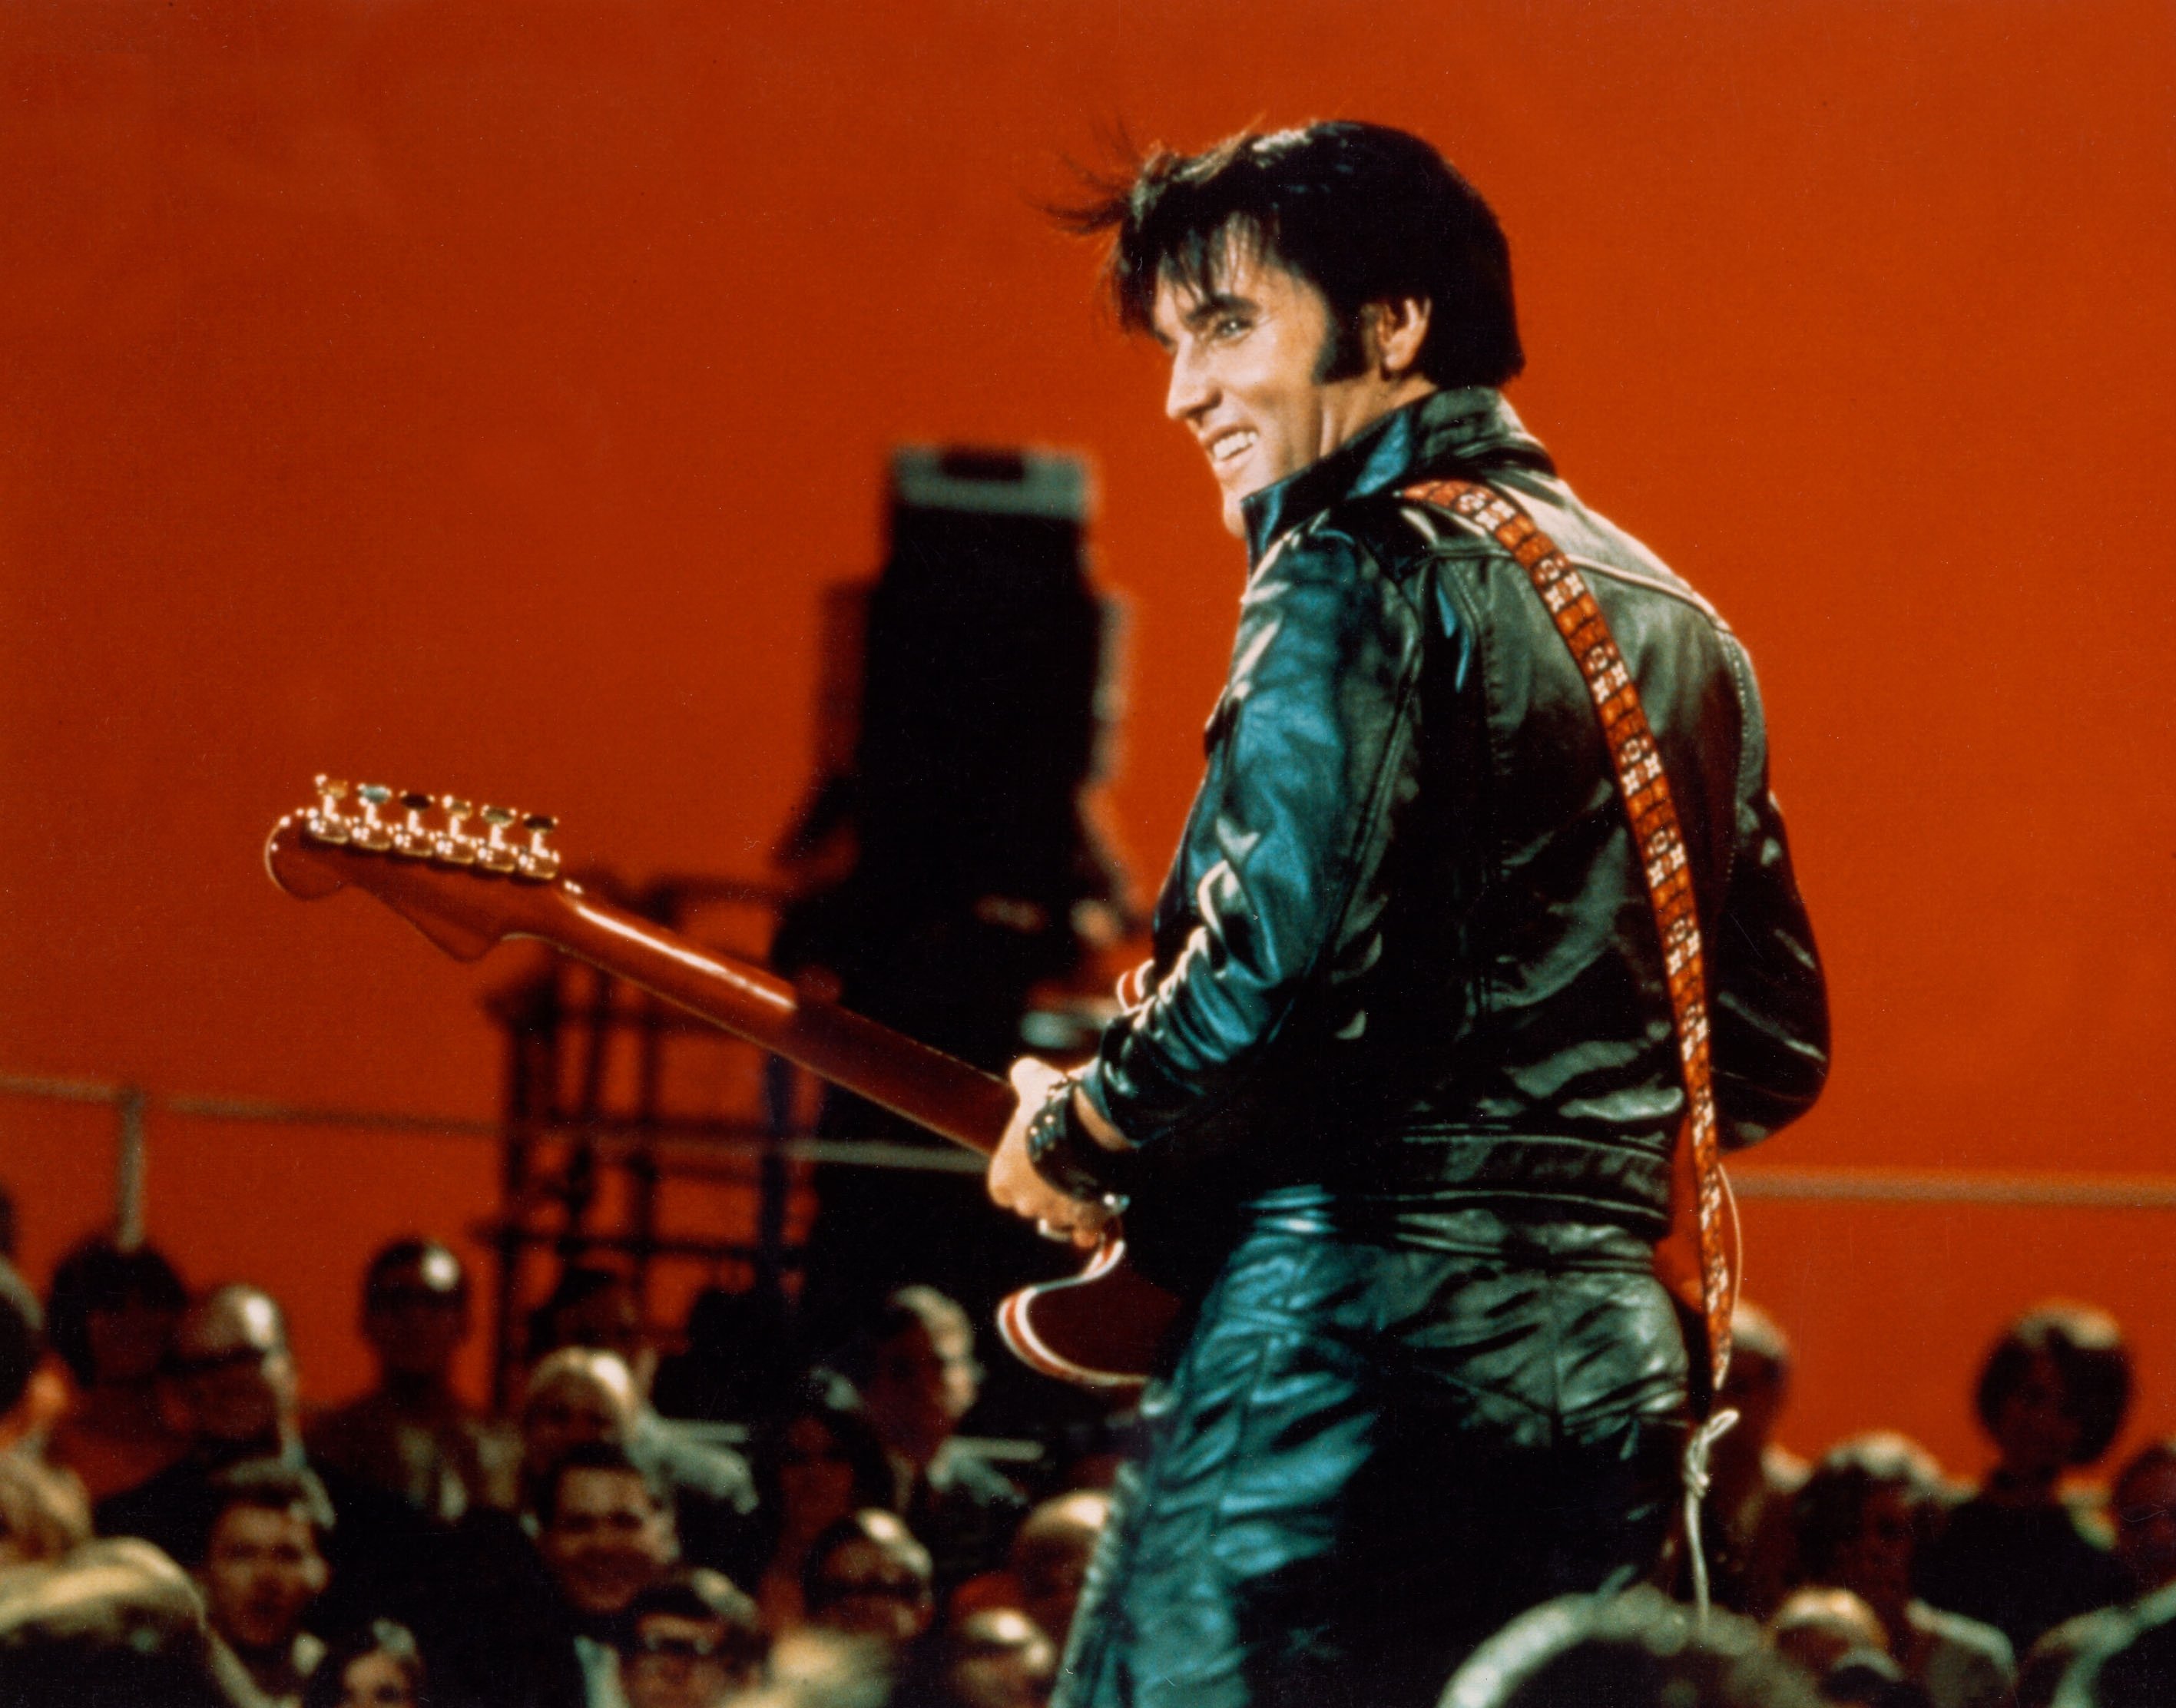 Elvis Presley wearing black